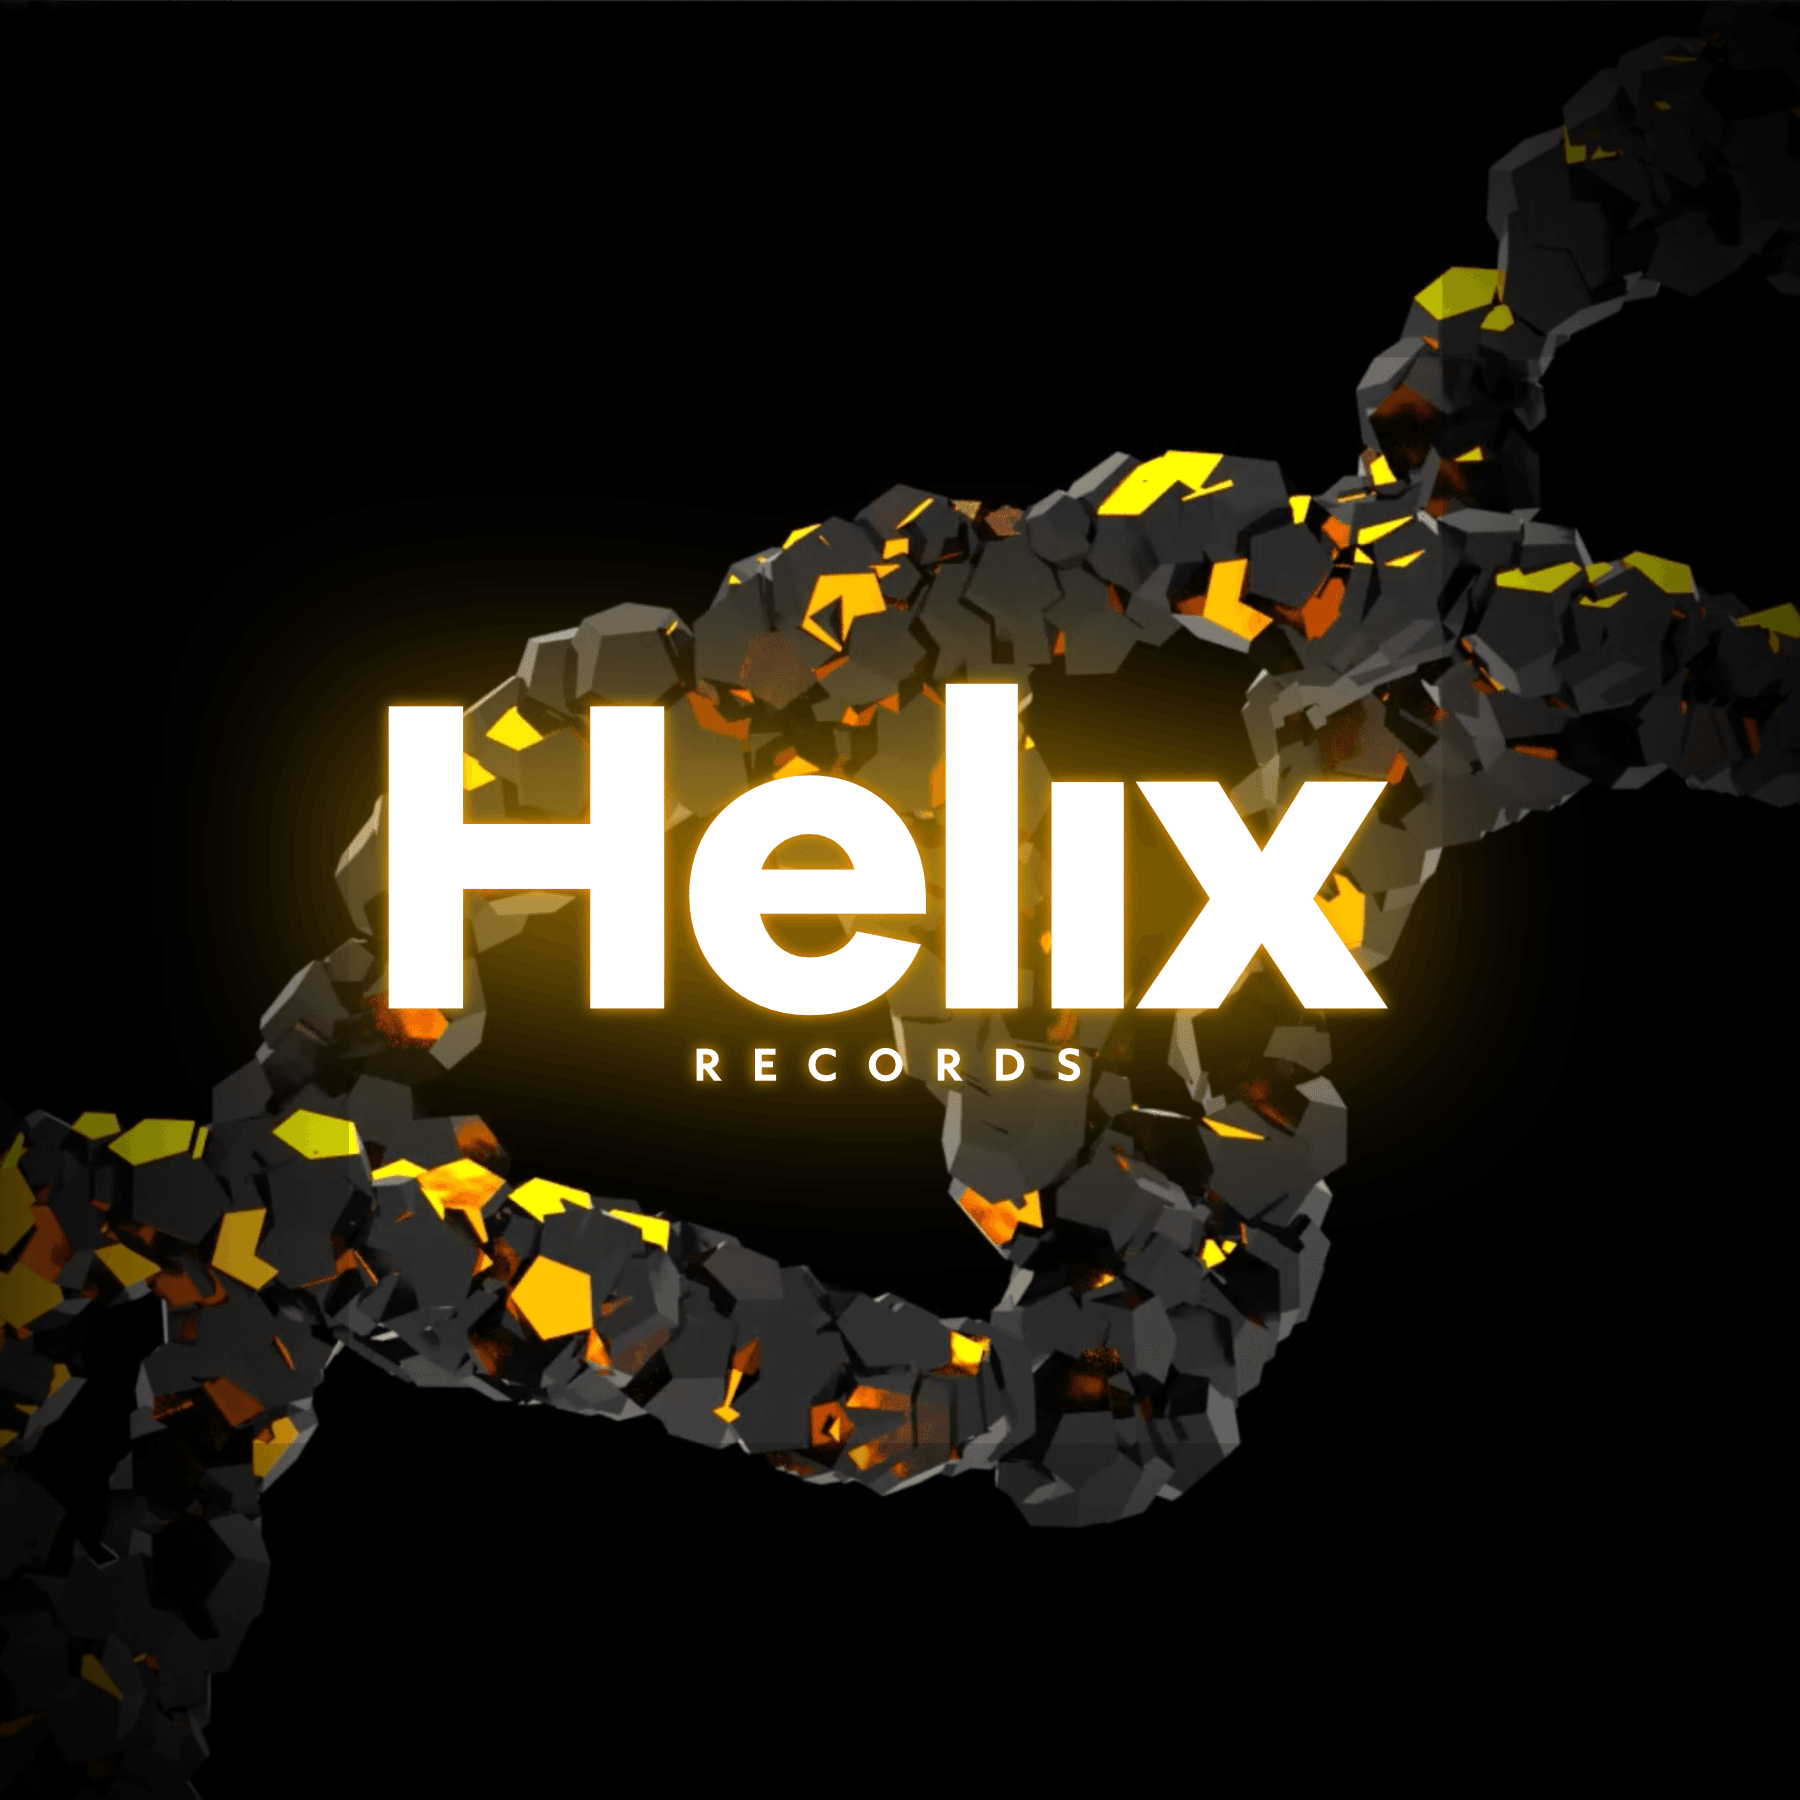 HelixRecords